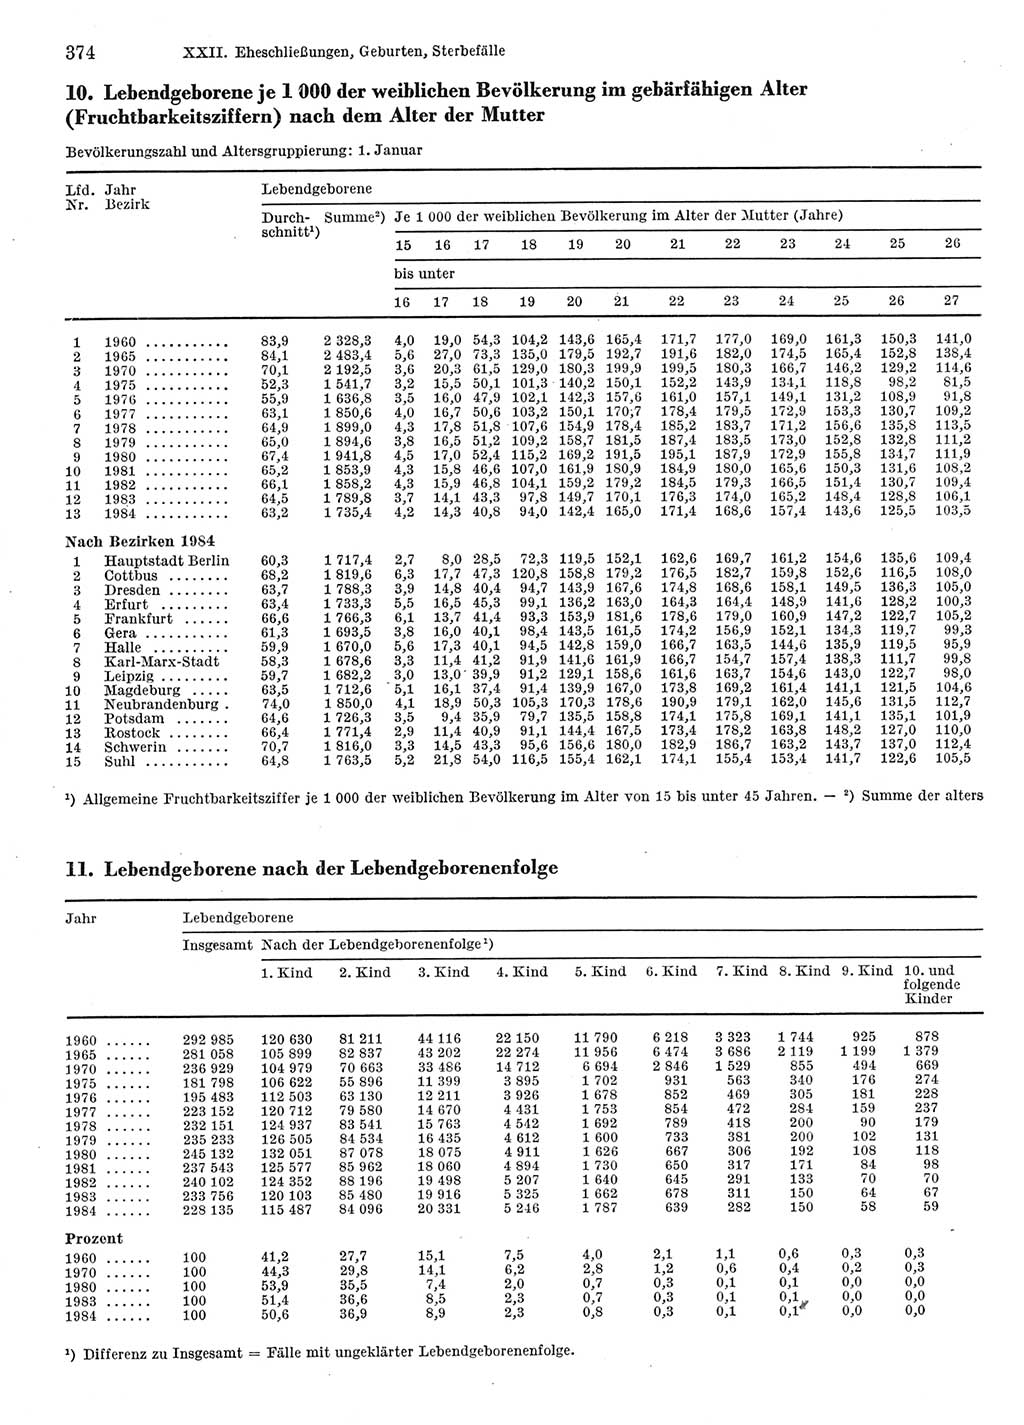 Statistisches Jahrbuch der Deutschen Demokratischen Republik (DDR) 1986, Seite 374 (Stat. Jb. DDR 1986, S. 374)